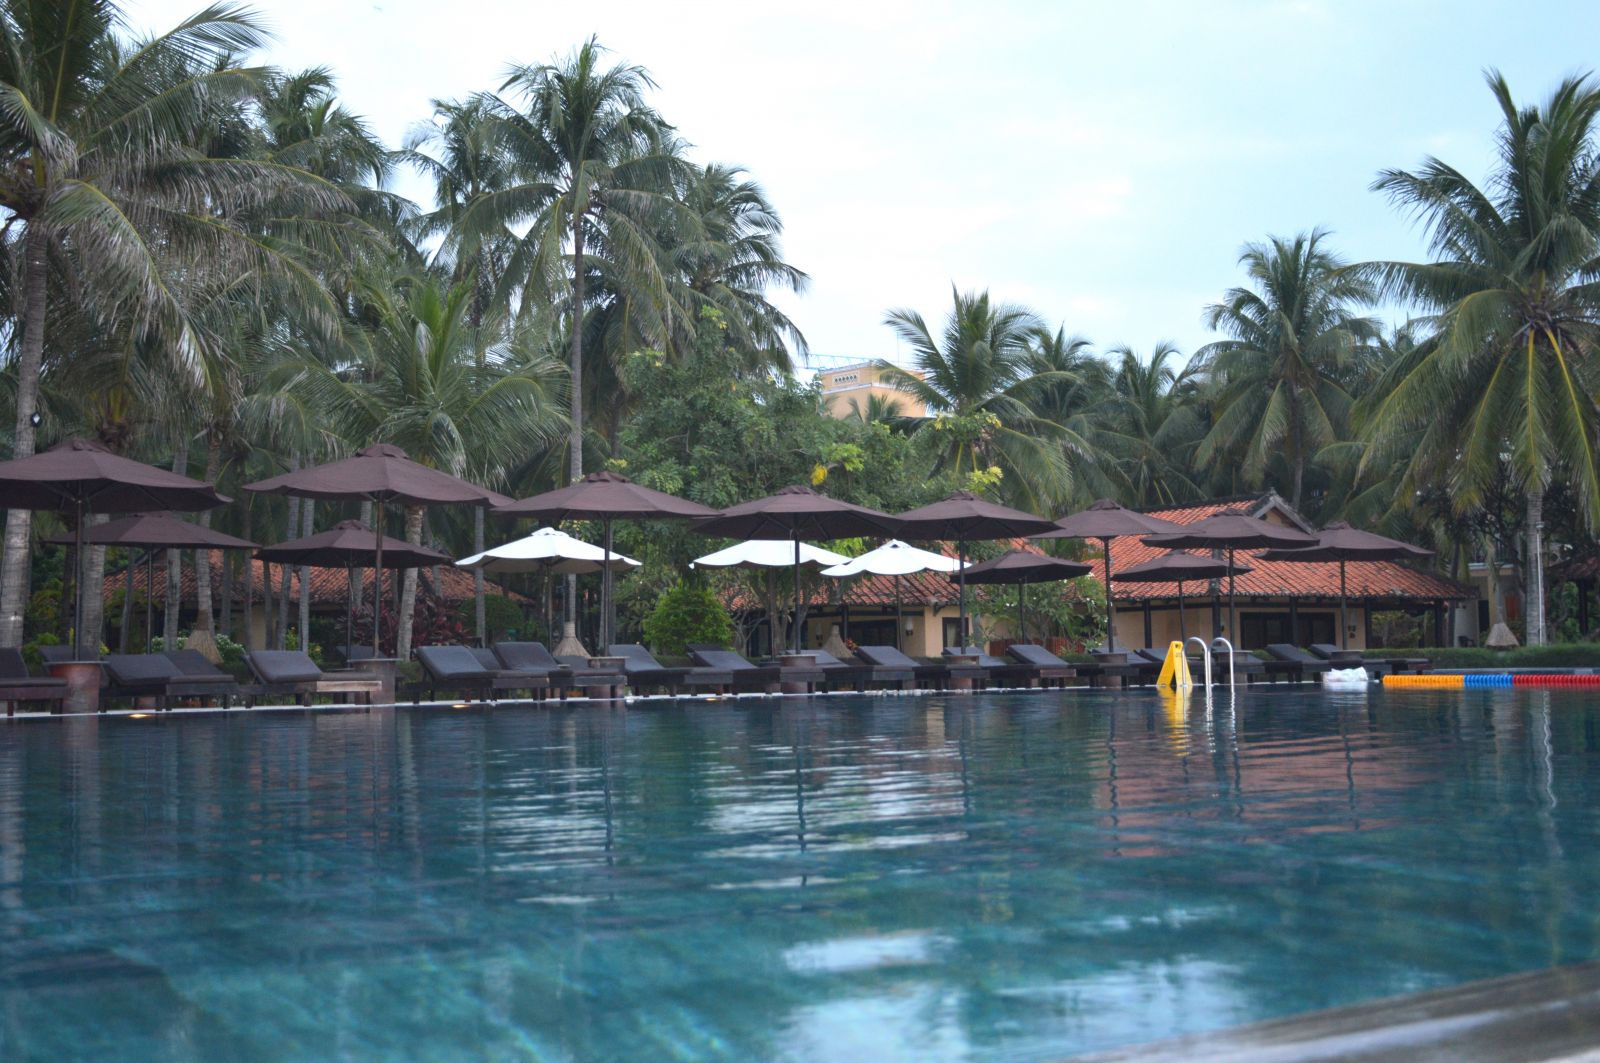 Điểm đặc biệt thu hút khách du lịch tại Seahorse Resort & Spa là bể bơi vô cực đầu tiên được xây dựng tại Mũi Né